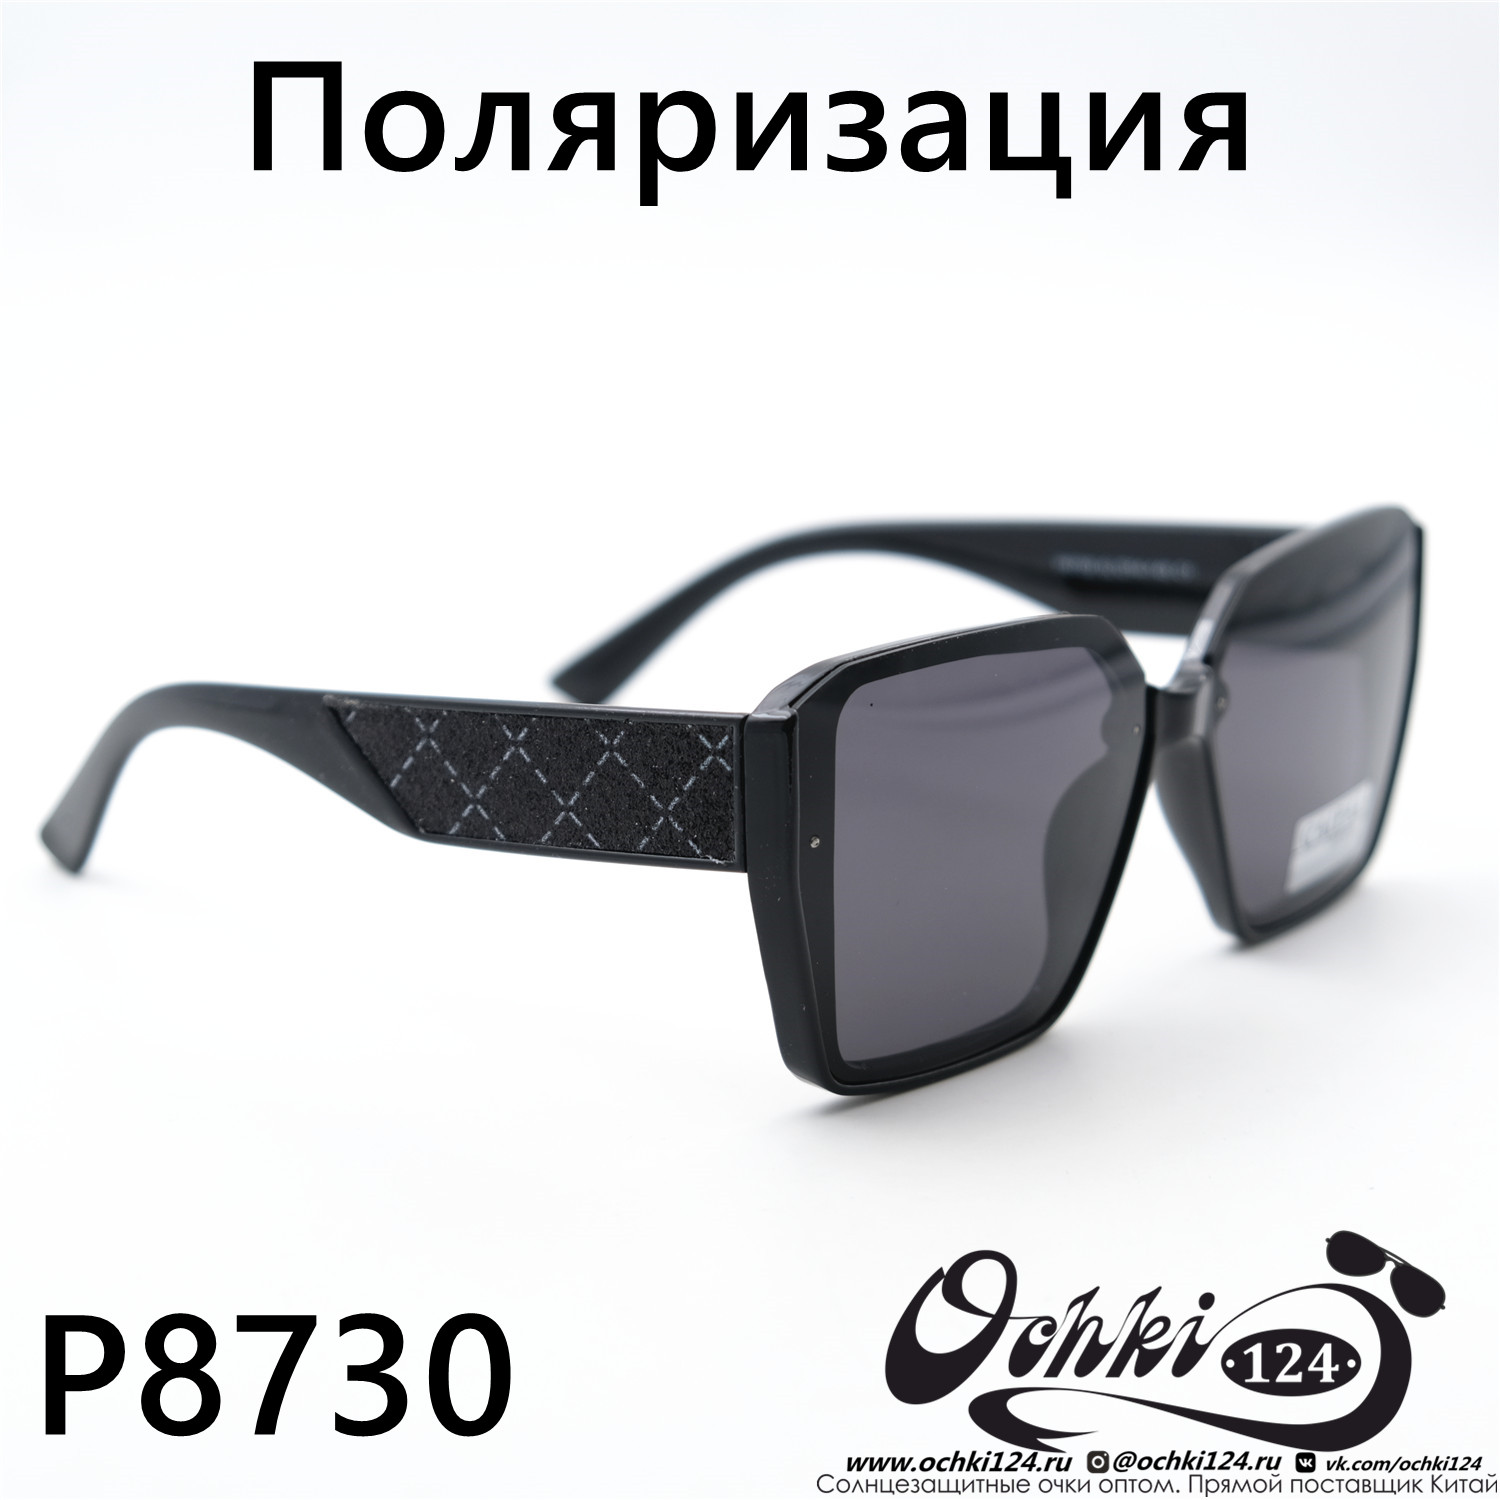  Солнцезащитные очки картинка Женские Caipai  Геометрические формы P8730-C1 